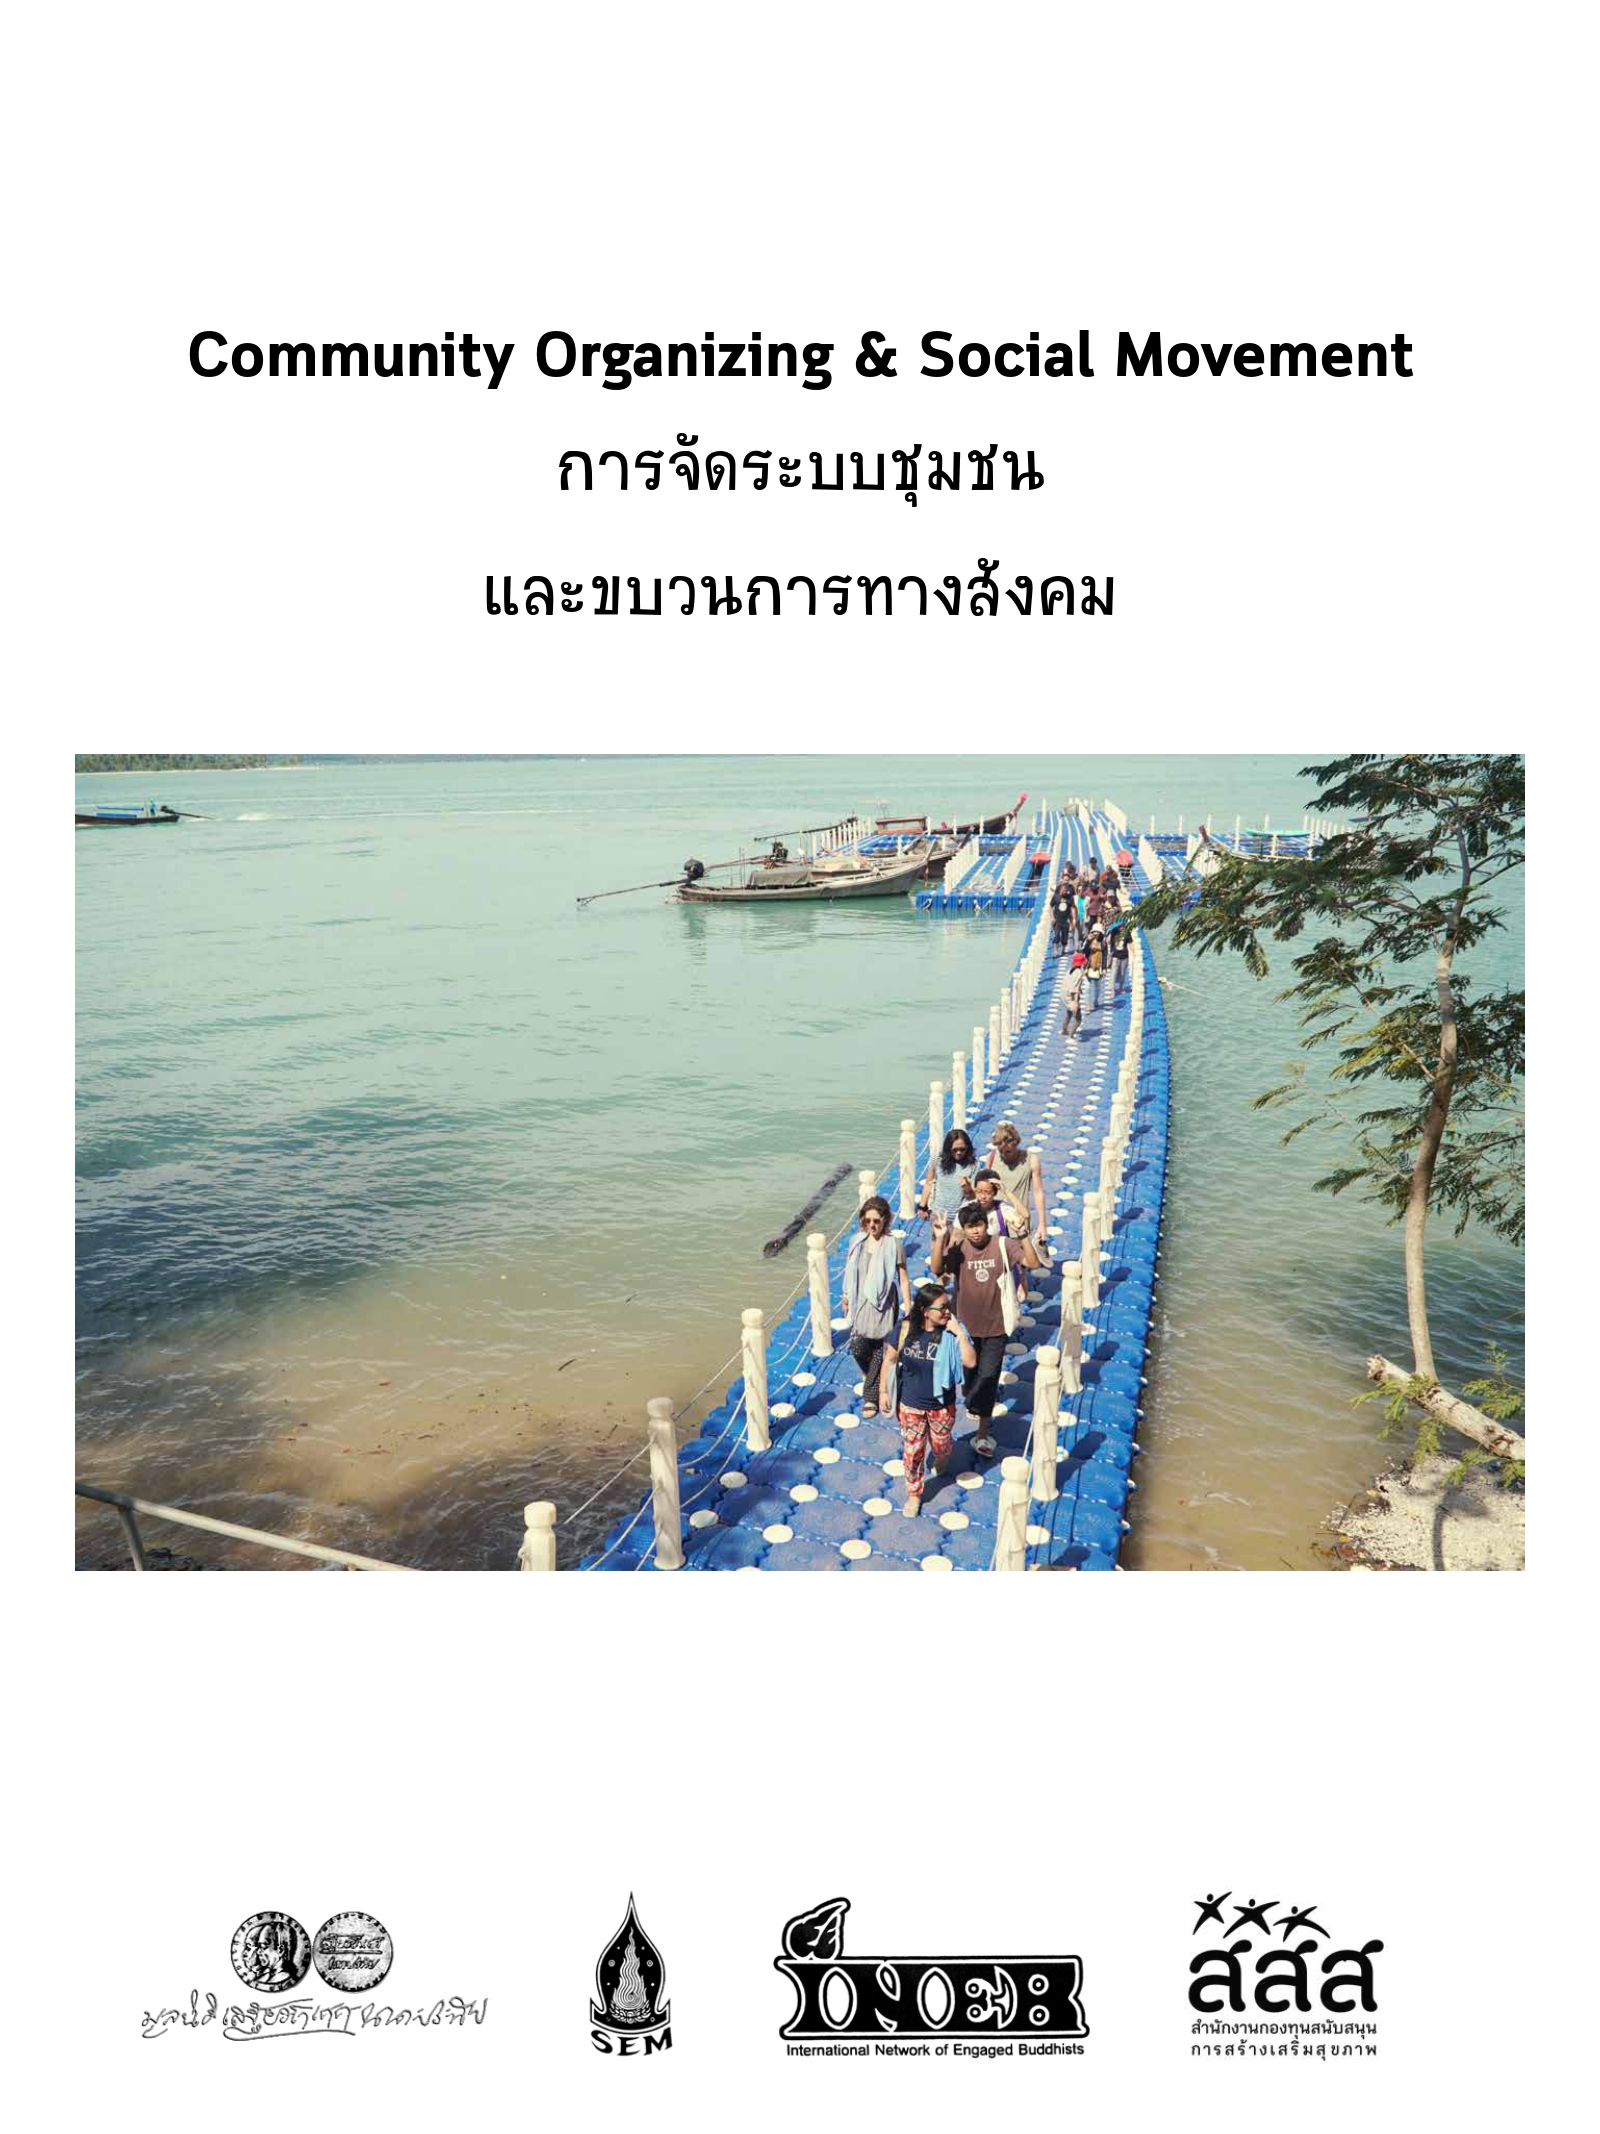 การจัดระบบชุมชน และขบวนการทางสังคม